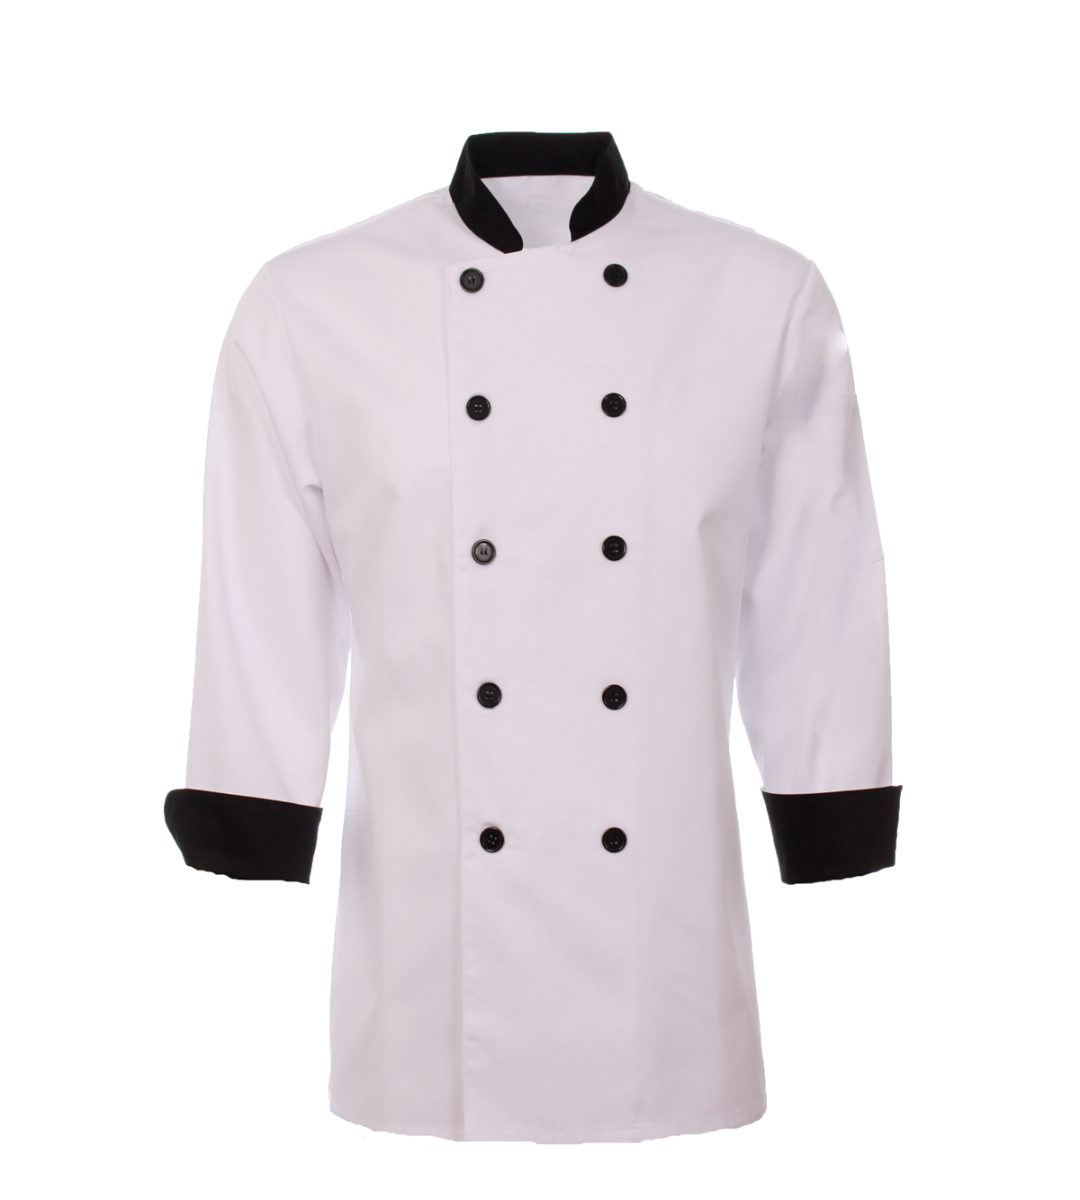 Veste de cuisinier classique MOBB #CC250 blanc et noir